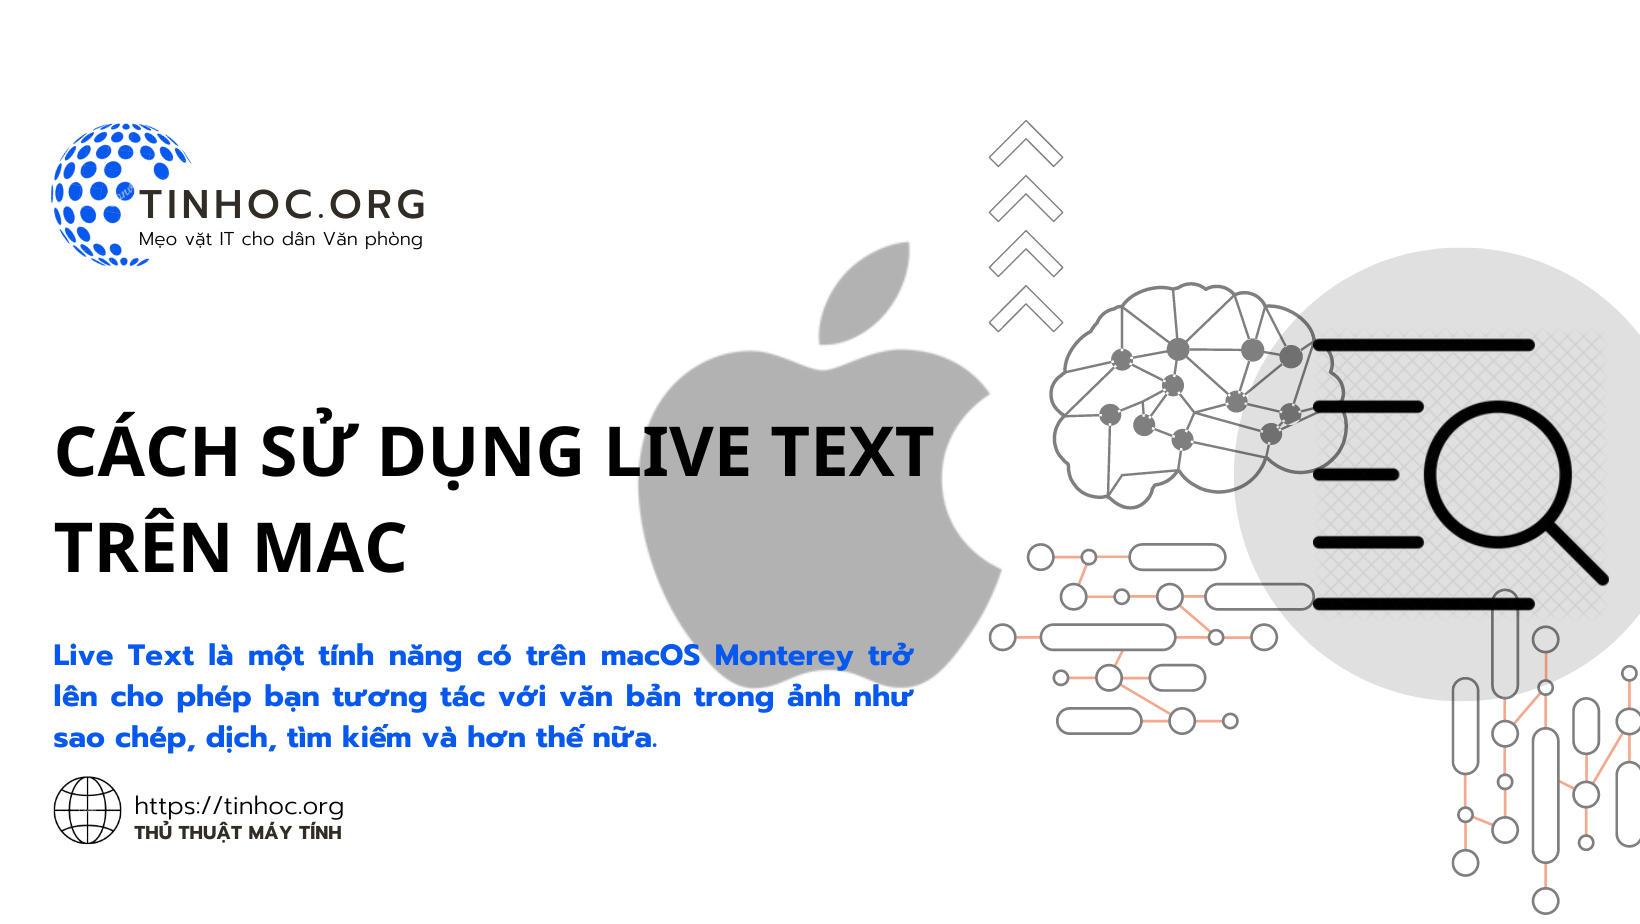 Live Text là một tính năng có trên macOS Monterey trở lên cho phép bạn tương tác với văn bản trong ảnh như sao chép, dịch, tìm kiếm và hơn thế nữa.